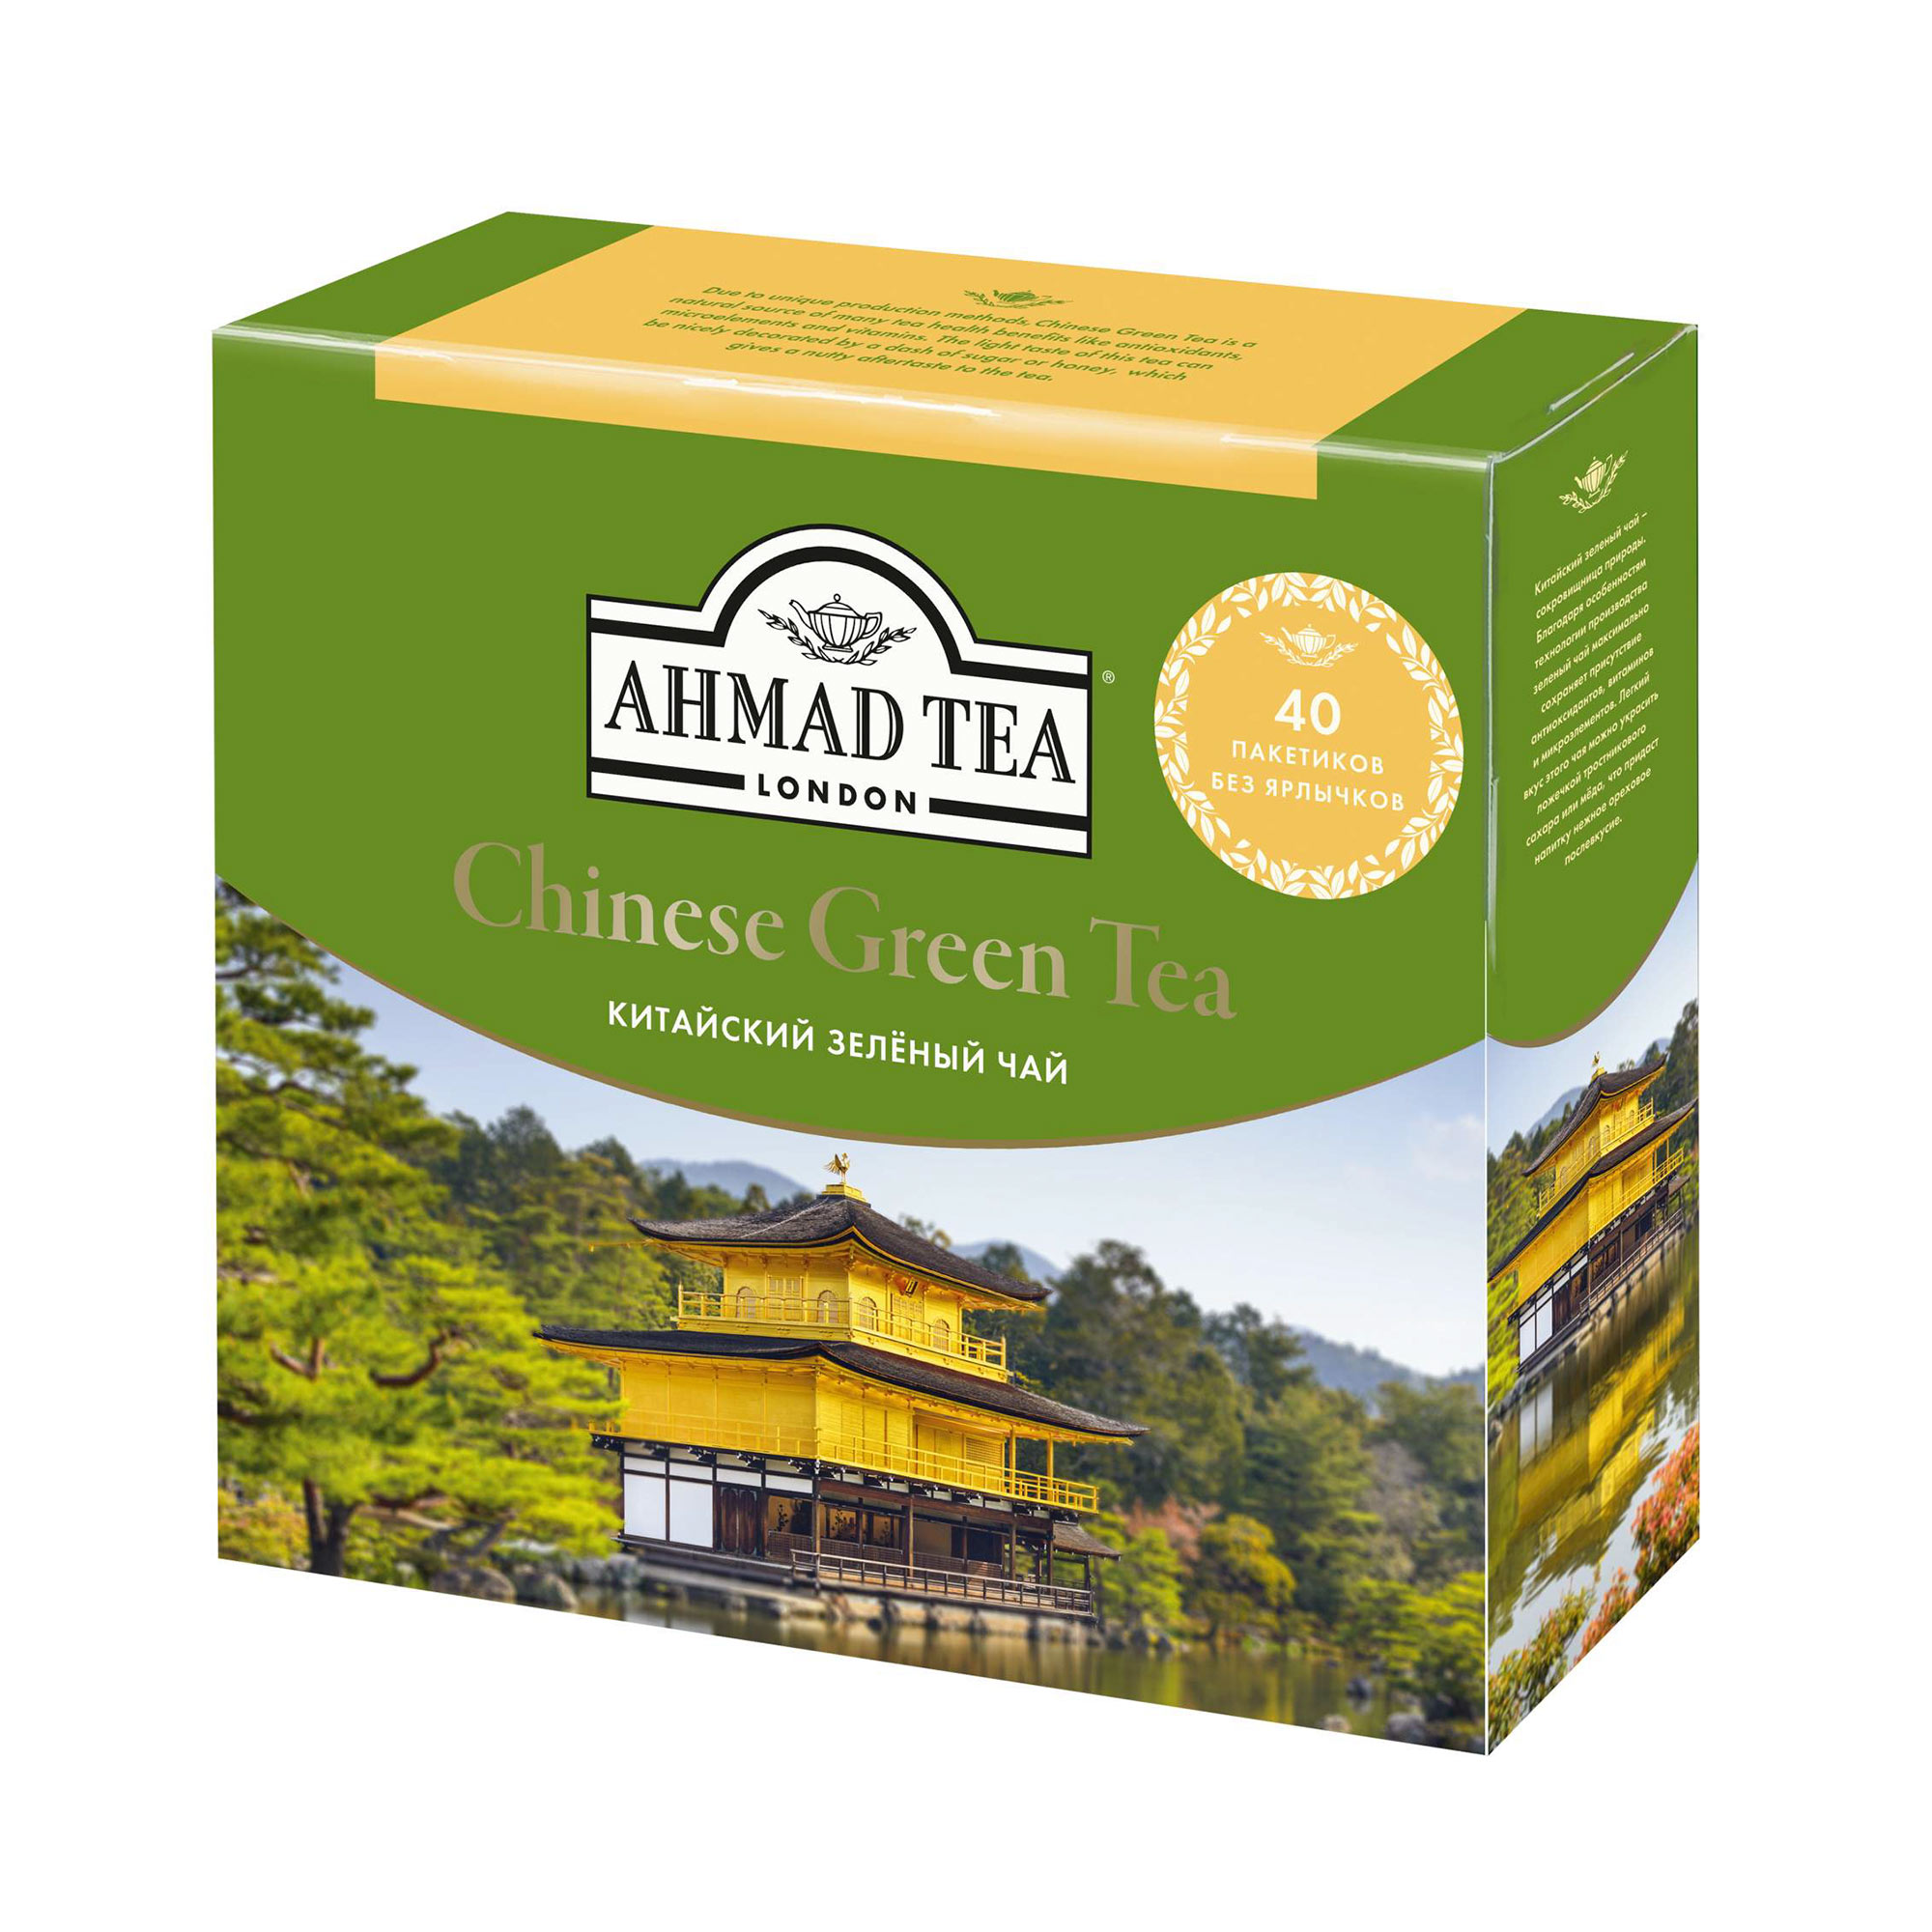 Чай зеленый Ahmad Tea Китайский 40х2 г ahmad ахмад зеленый с жасмином 100пак